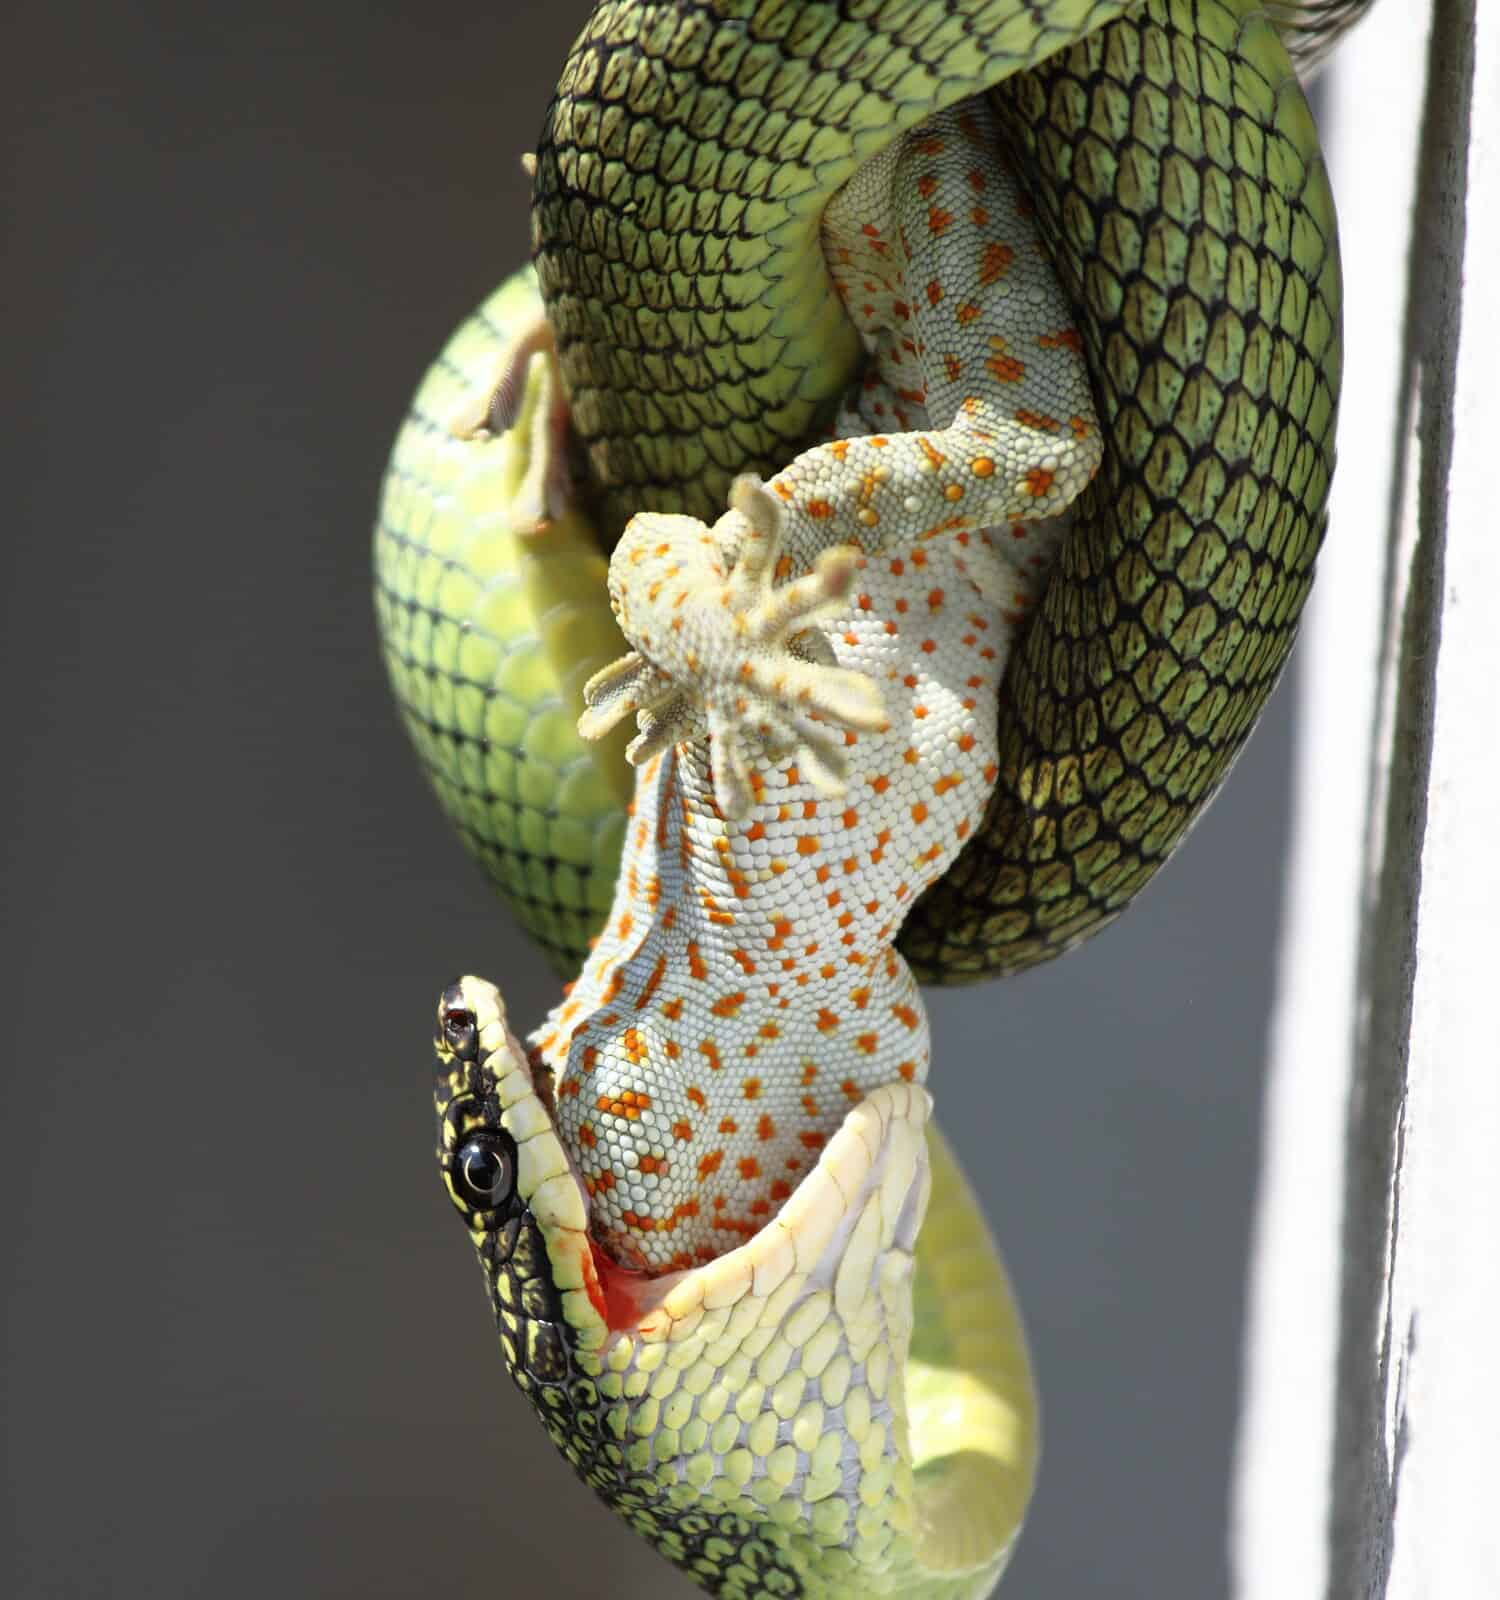 The venom green snake is eating gecko